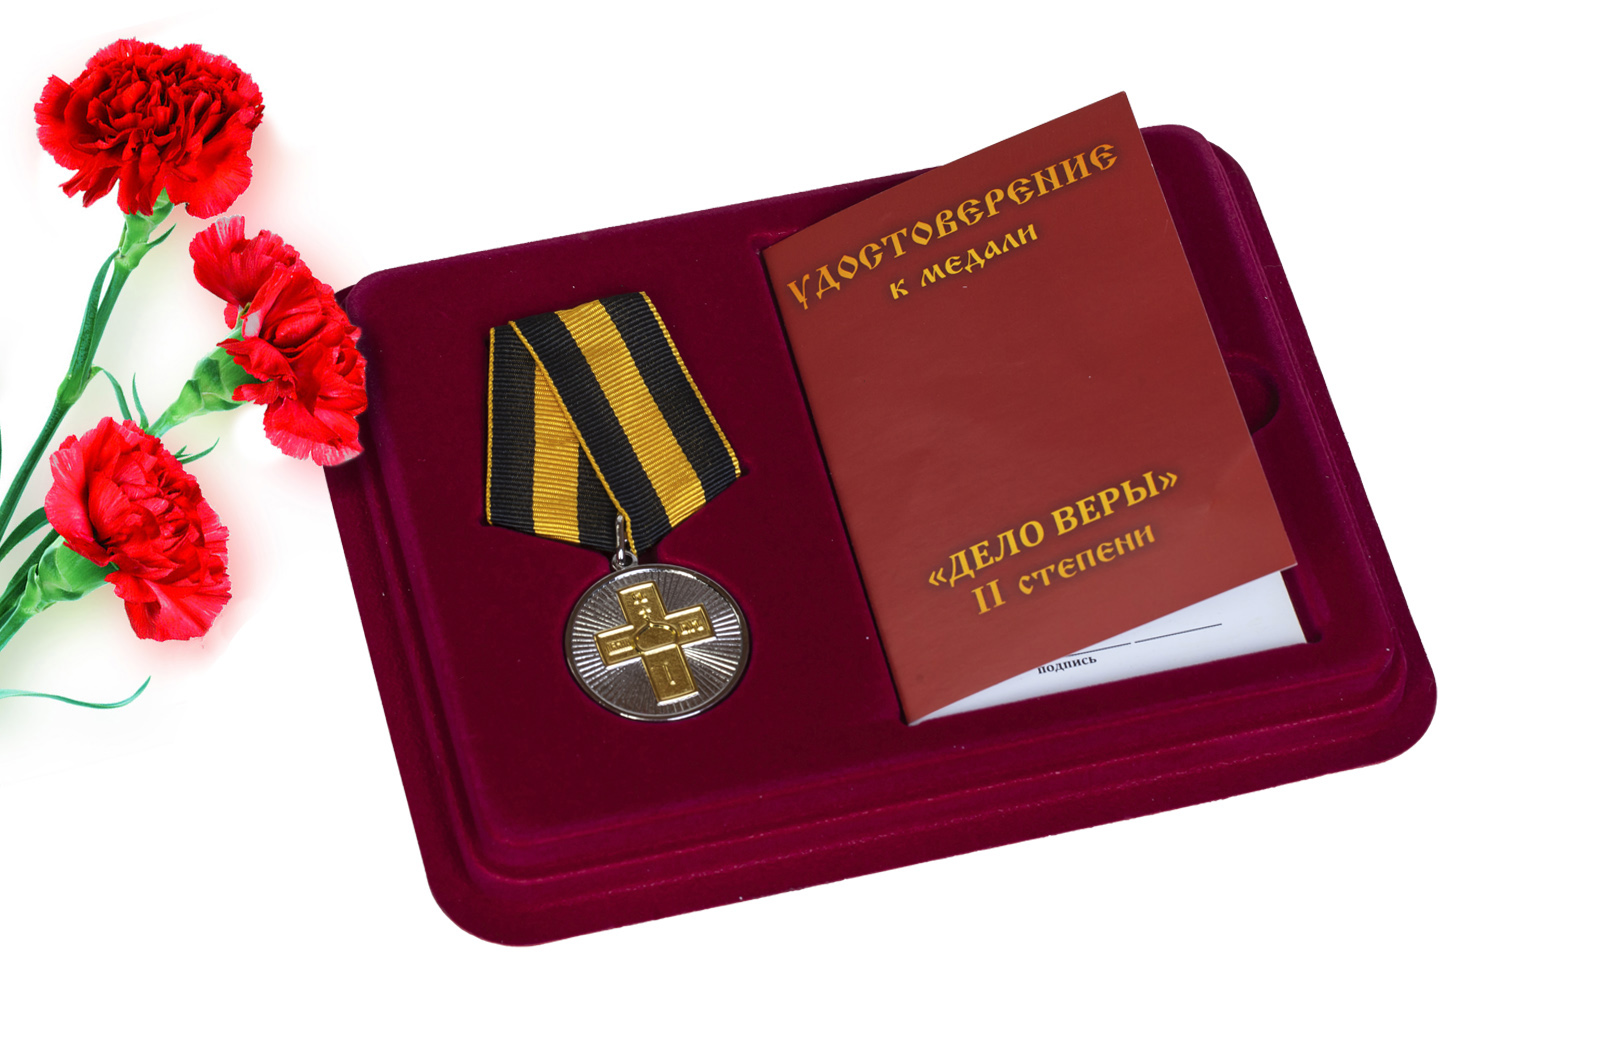 Купить православную медаль Дело Веры 2 степени оптом или в розницу